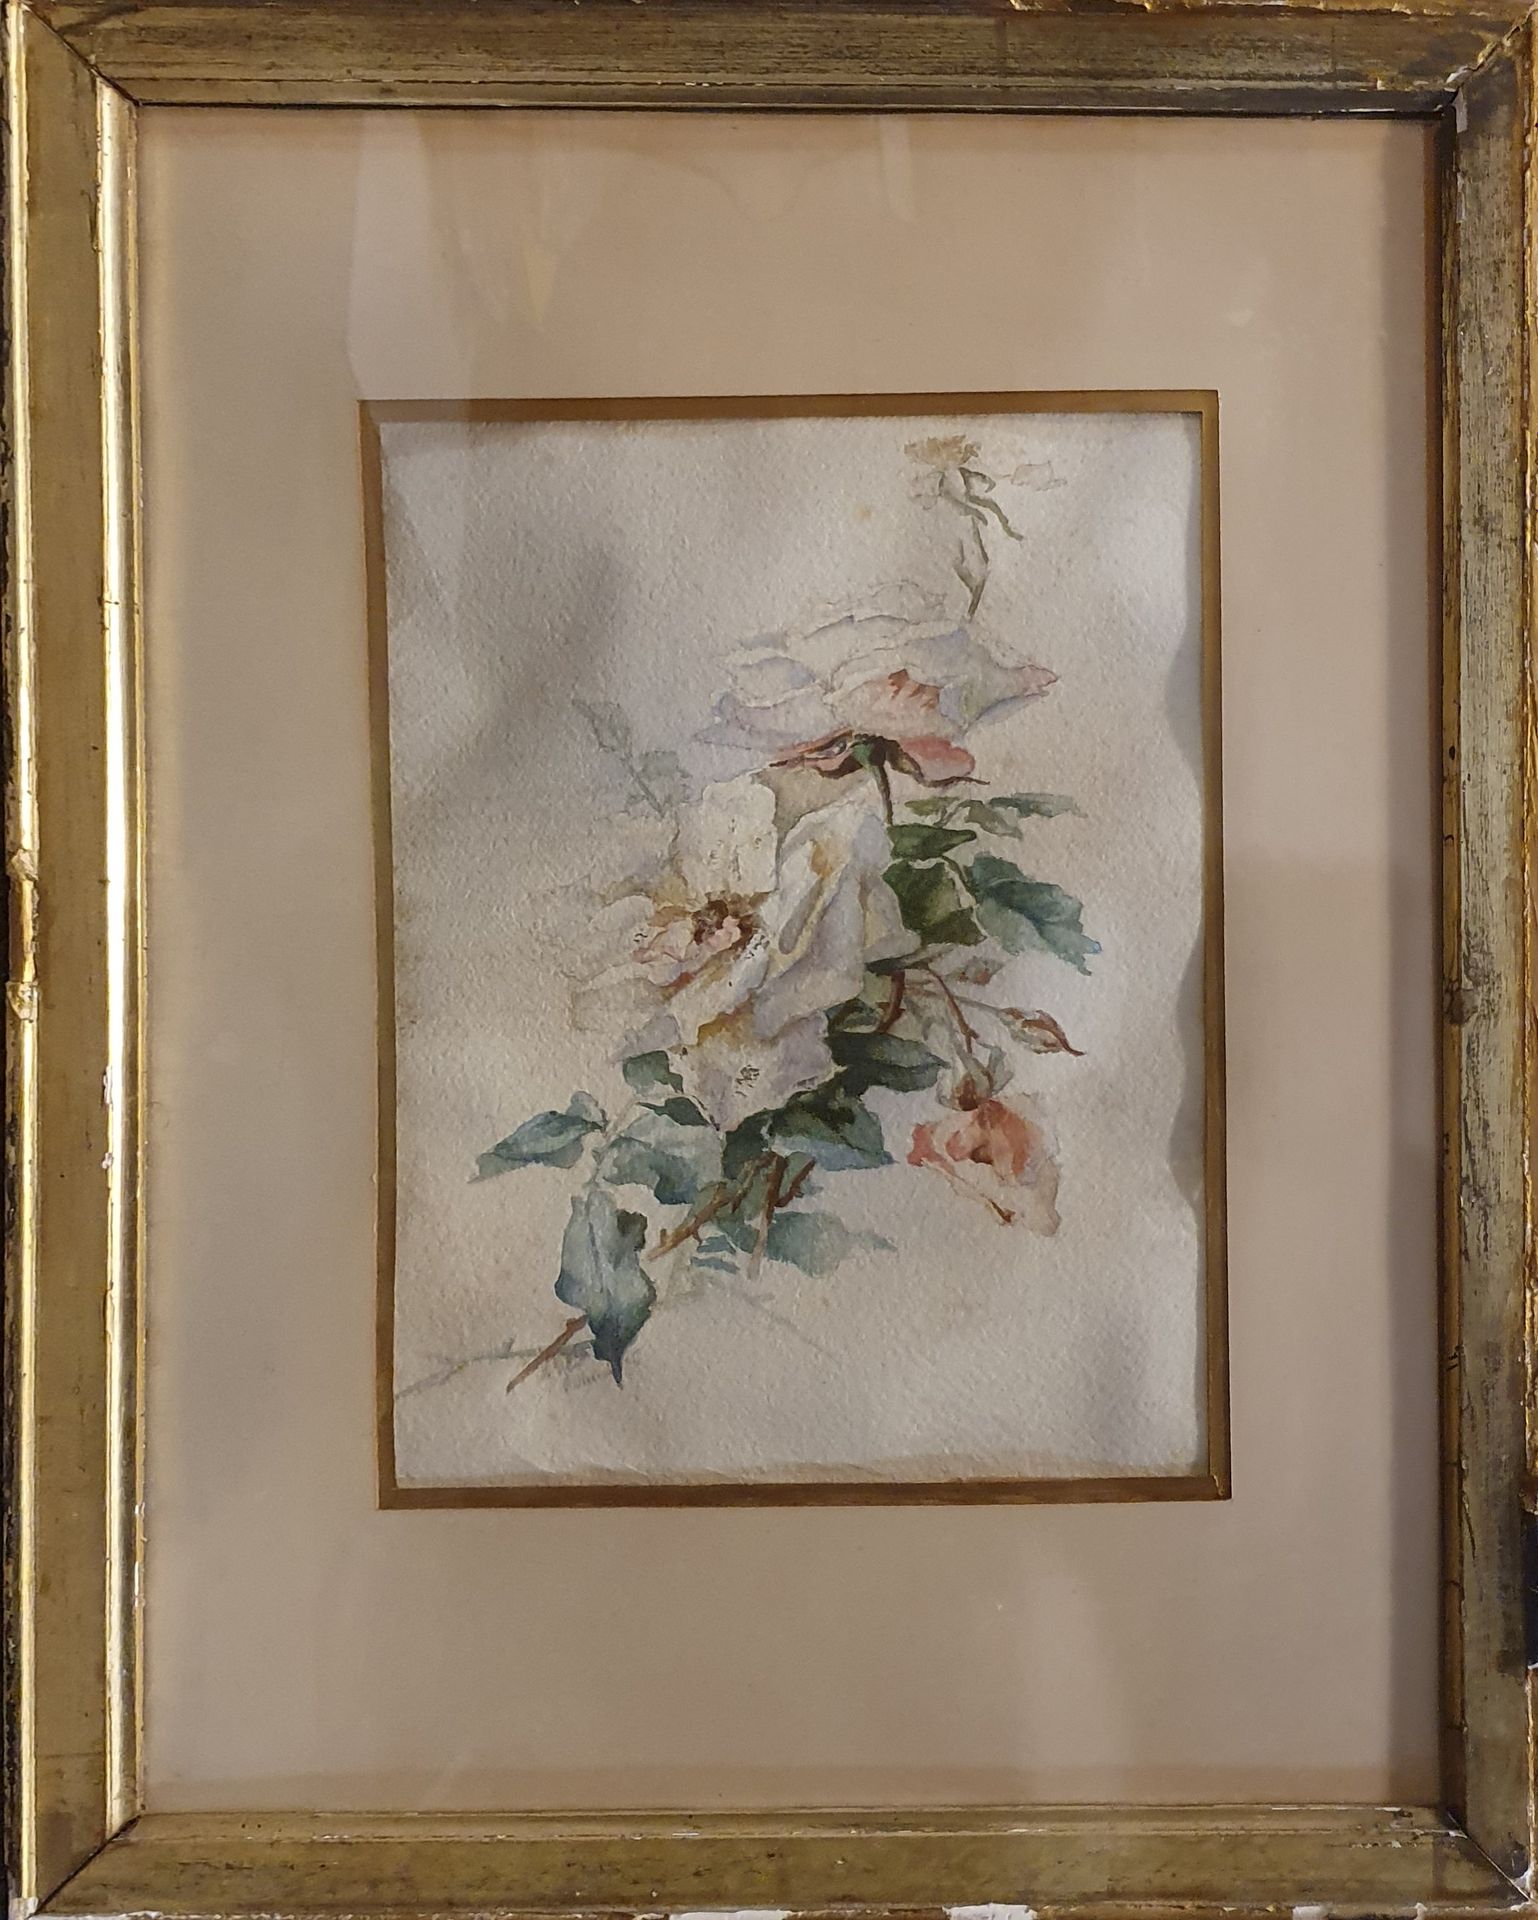 Null YVERT Marie Hector (1808-?)

鲜花，96年11月

纸上水彩画，左下角有签名和日期

翘曲和发霉

30 x 23 cm